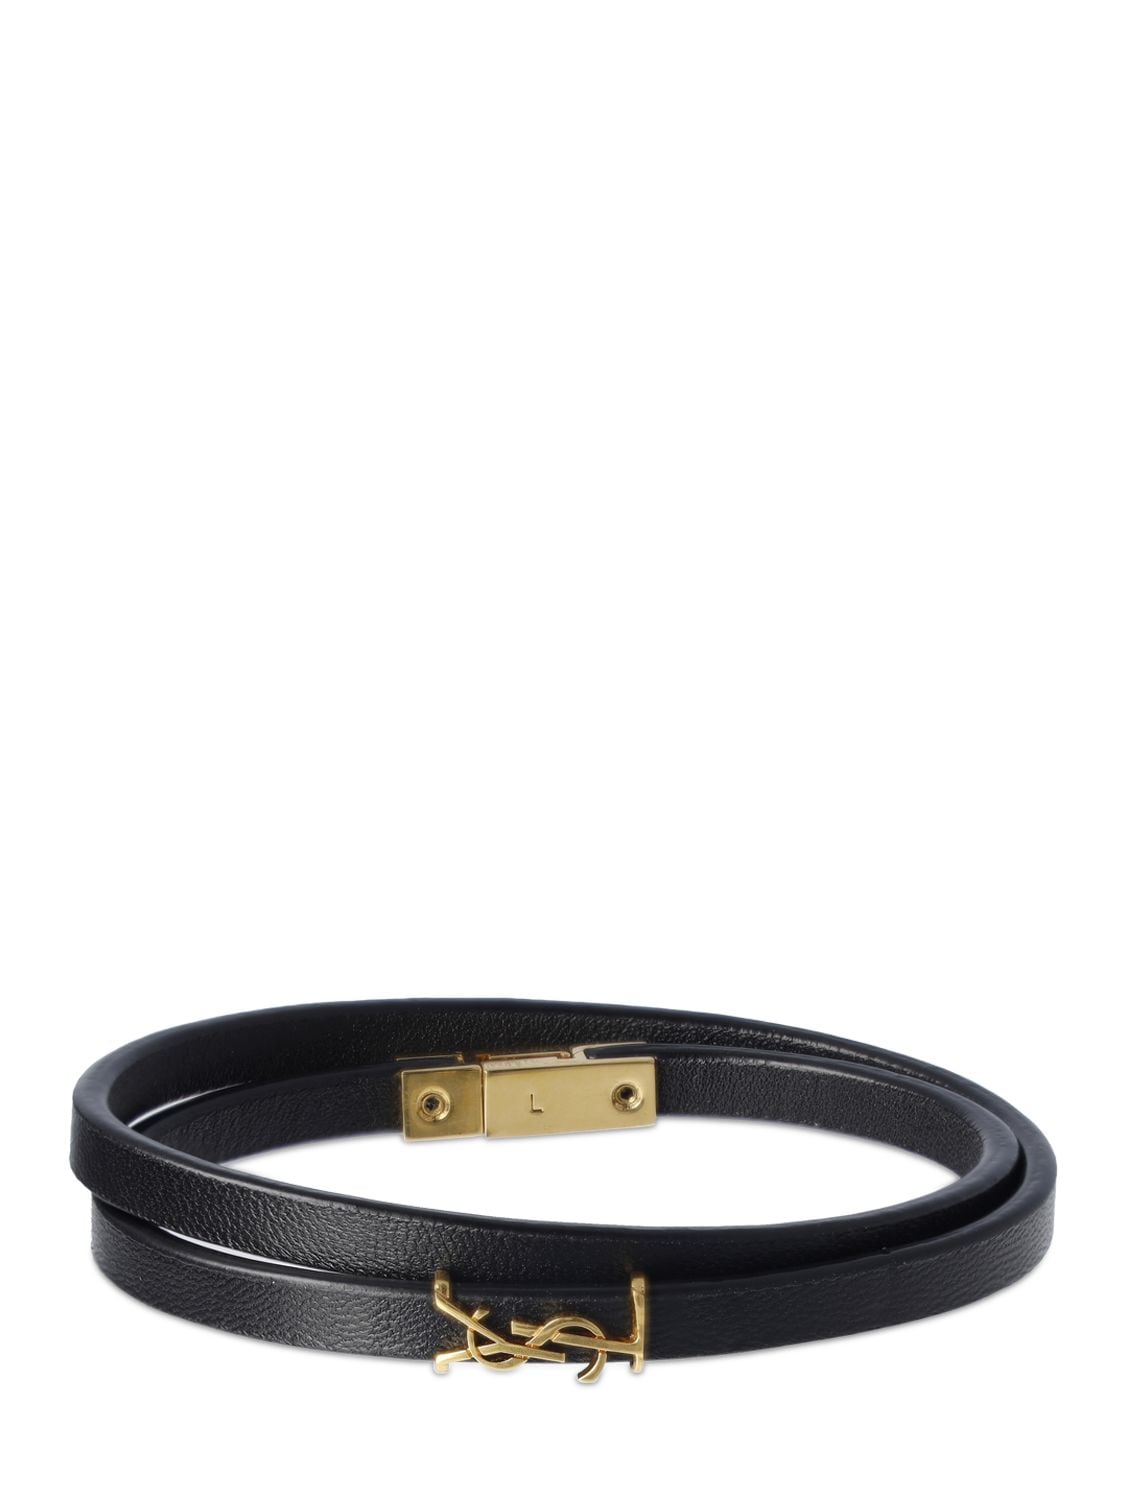 Image of Monogram Leather Bracelet